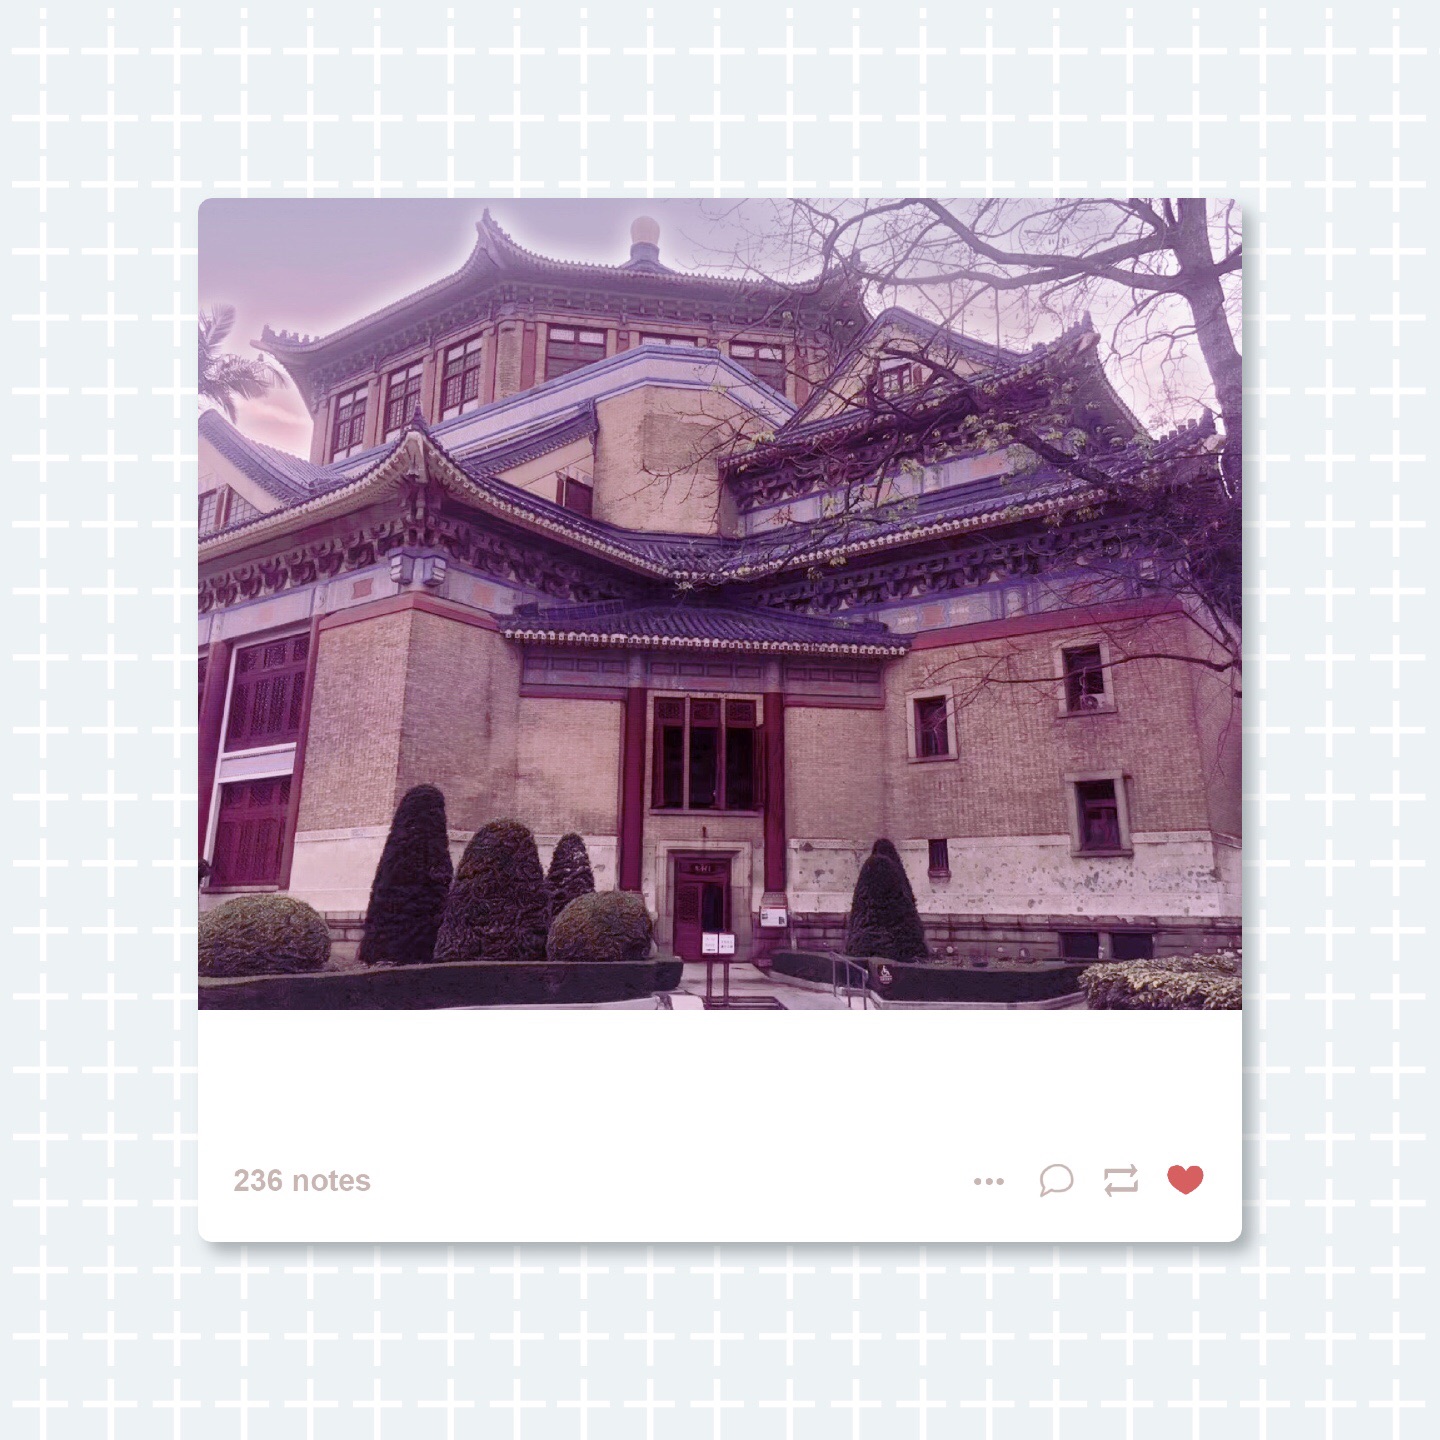 广州｜刷爆朋友圈特显艺术高贵气质的宫殿式建筑-中山纪念堂